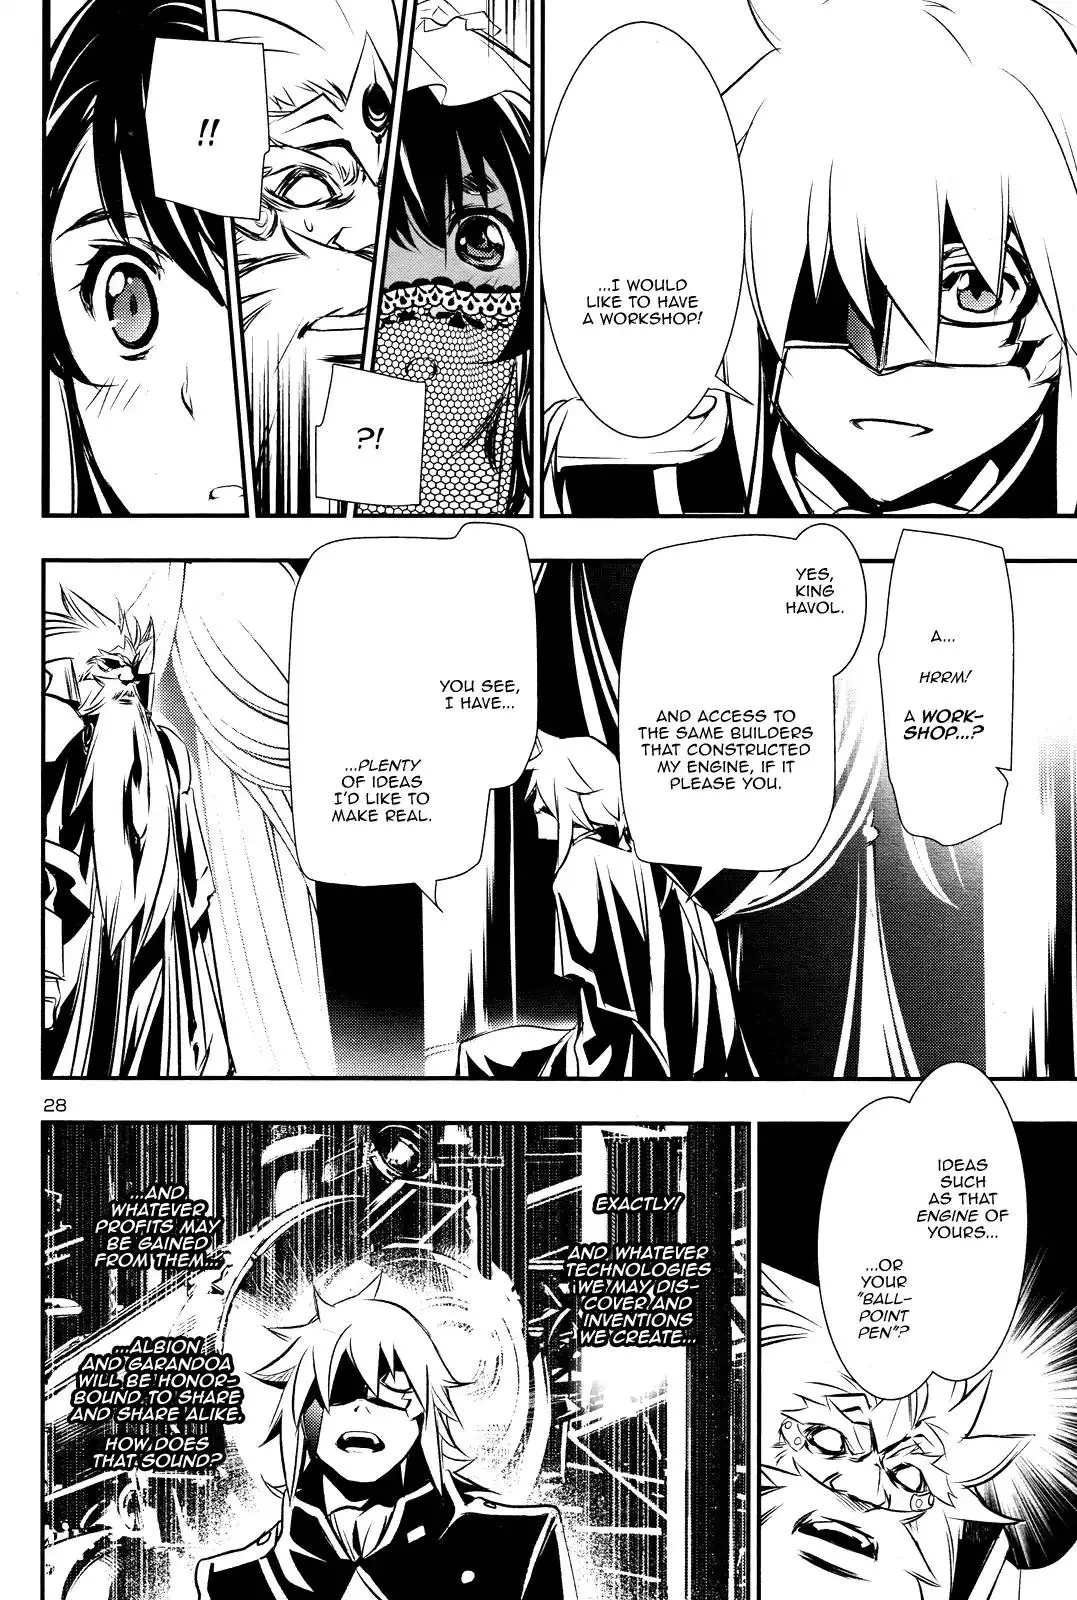 Shinju no Nectar - 13 page 26